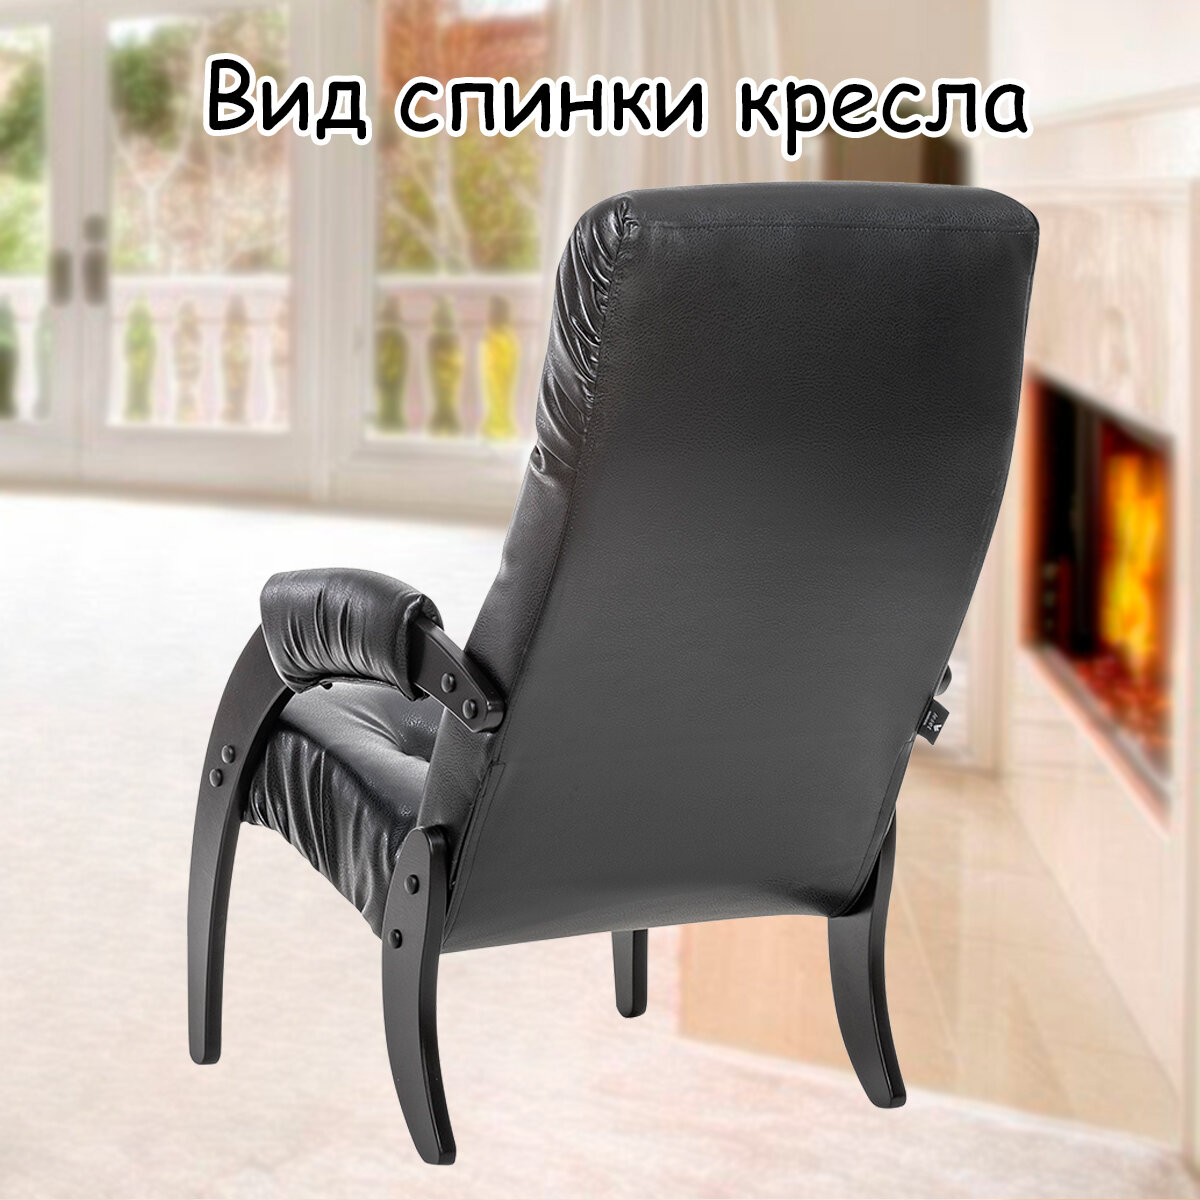 Кресло для взрослых 56х79х98 см, модель 61, экокожа, цвет: Vegas lite black (черный), каркас: Venge (черный) - фотография № 8